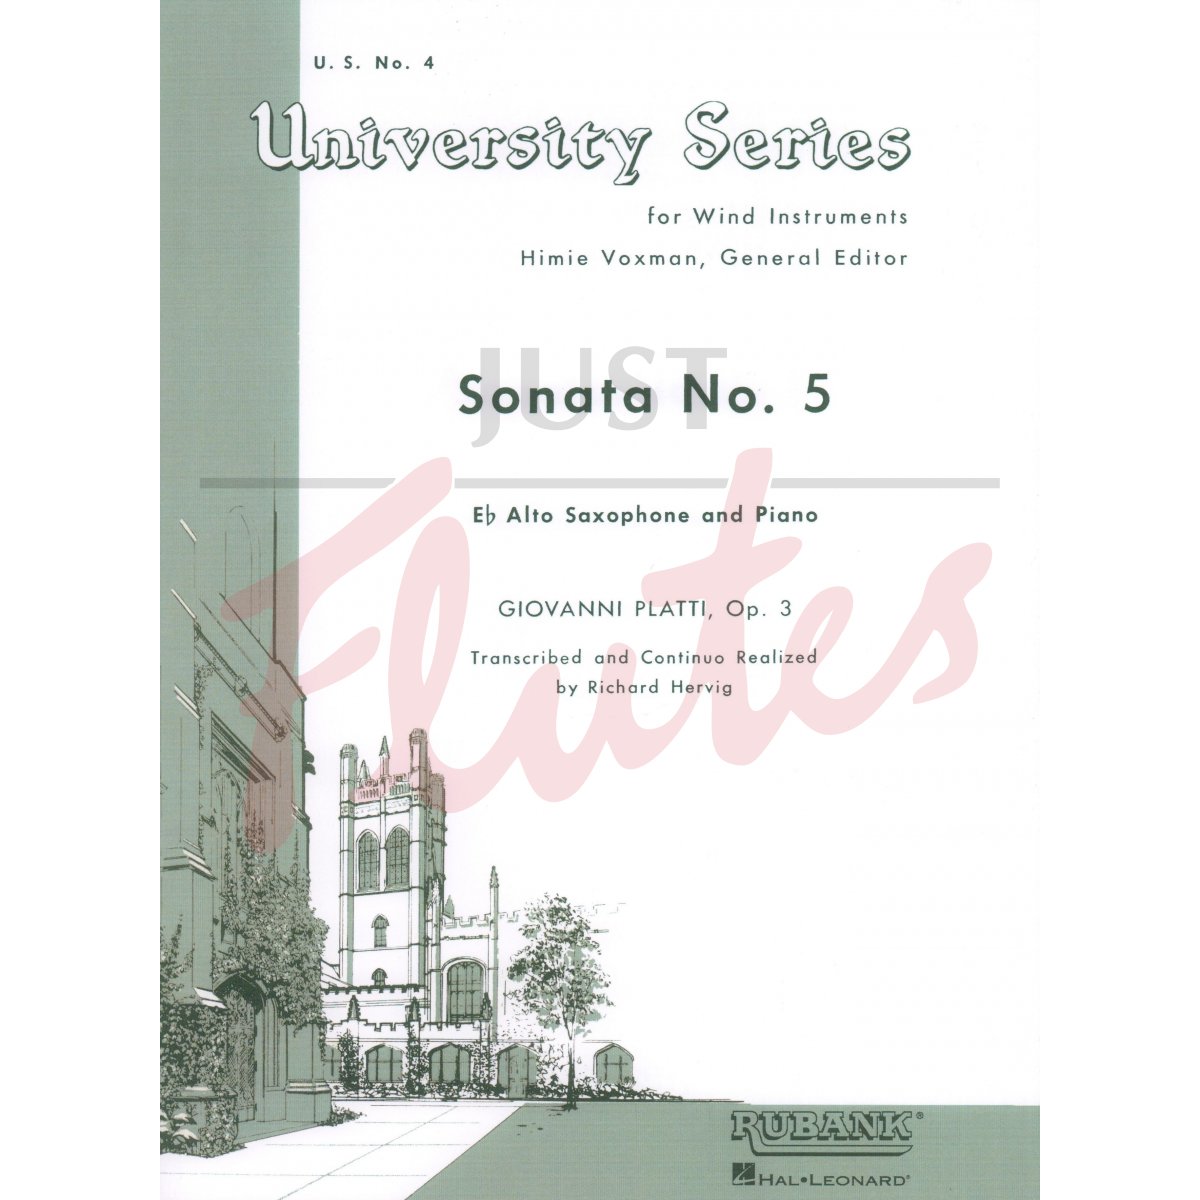 Sonata No. 5 for Alto Saxophone and Piano